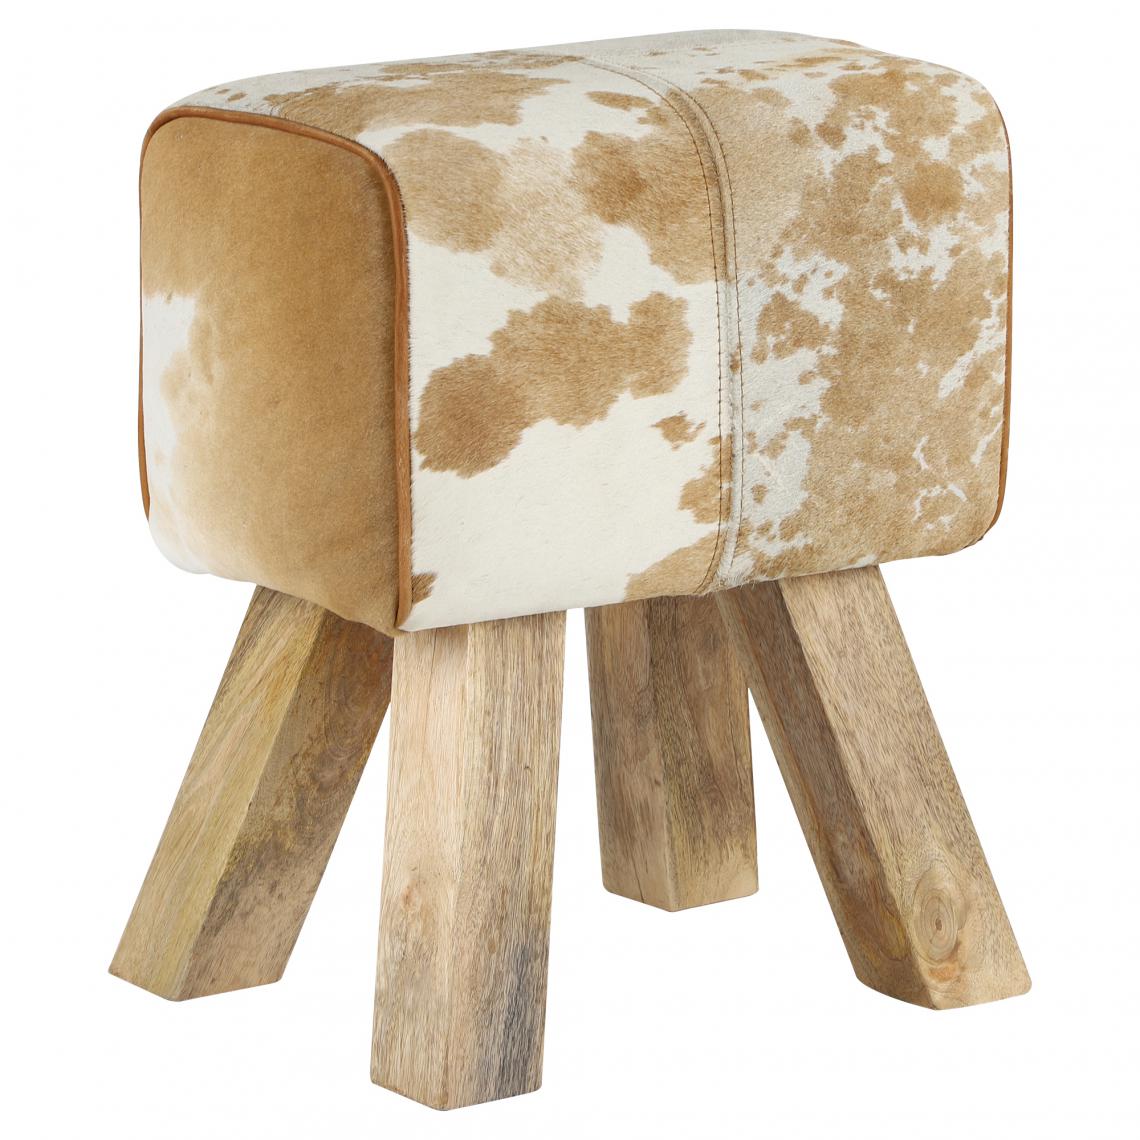 Womo-design - Tabouret 36x47x30 cm cuir de chèvre brun/blanc et bois de manguier WOMO-Design - Tabourets